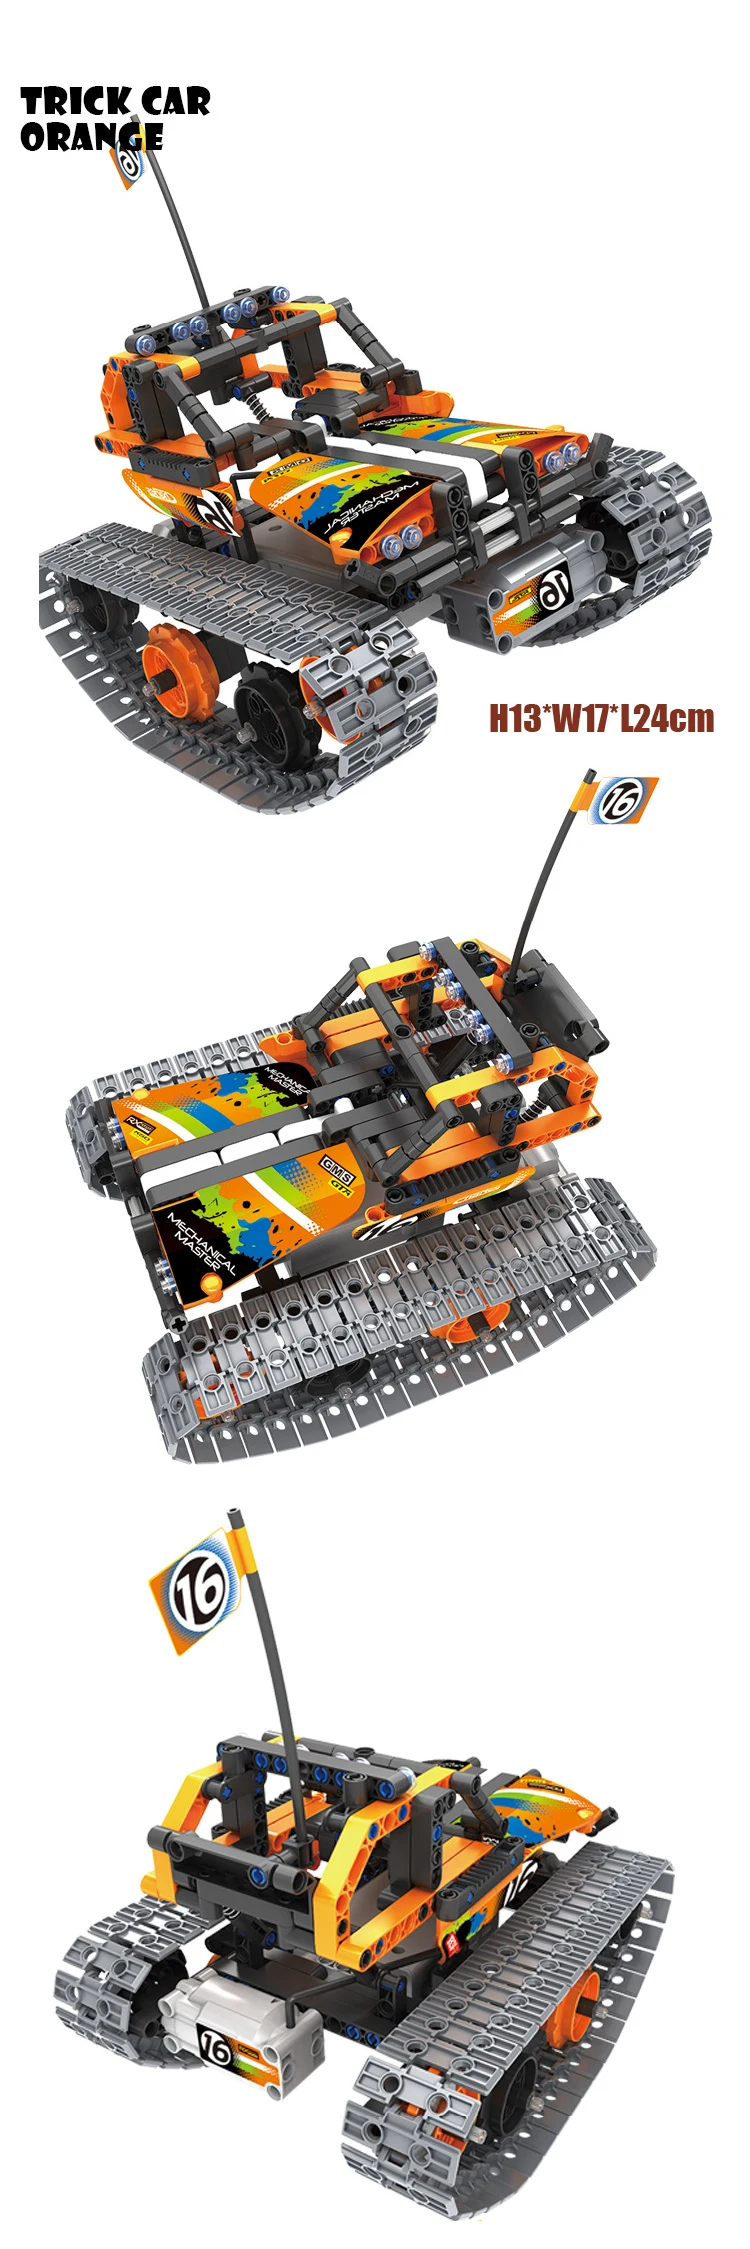 Technic caca трансформация умный танцующий робот строительный блок Скорпион 2в1 2,4 ГГц rc кирпич Радио пульт дистанционного управления игрушка Коллекция